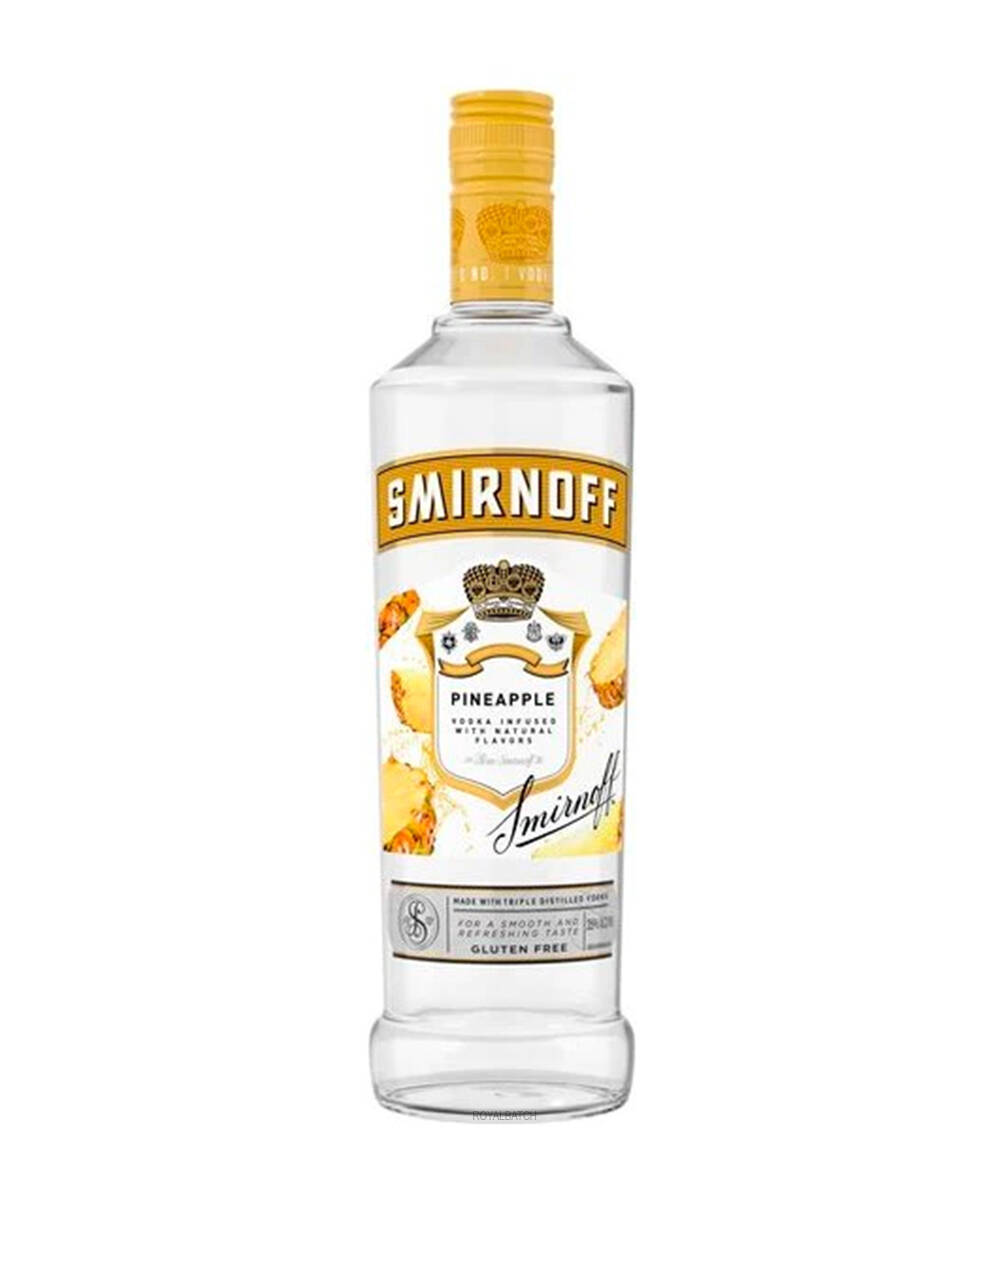 Smirnoff Pineapple Infused Flavored Vodka